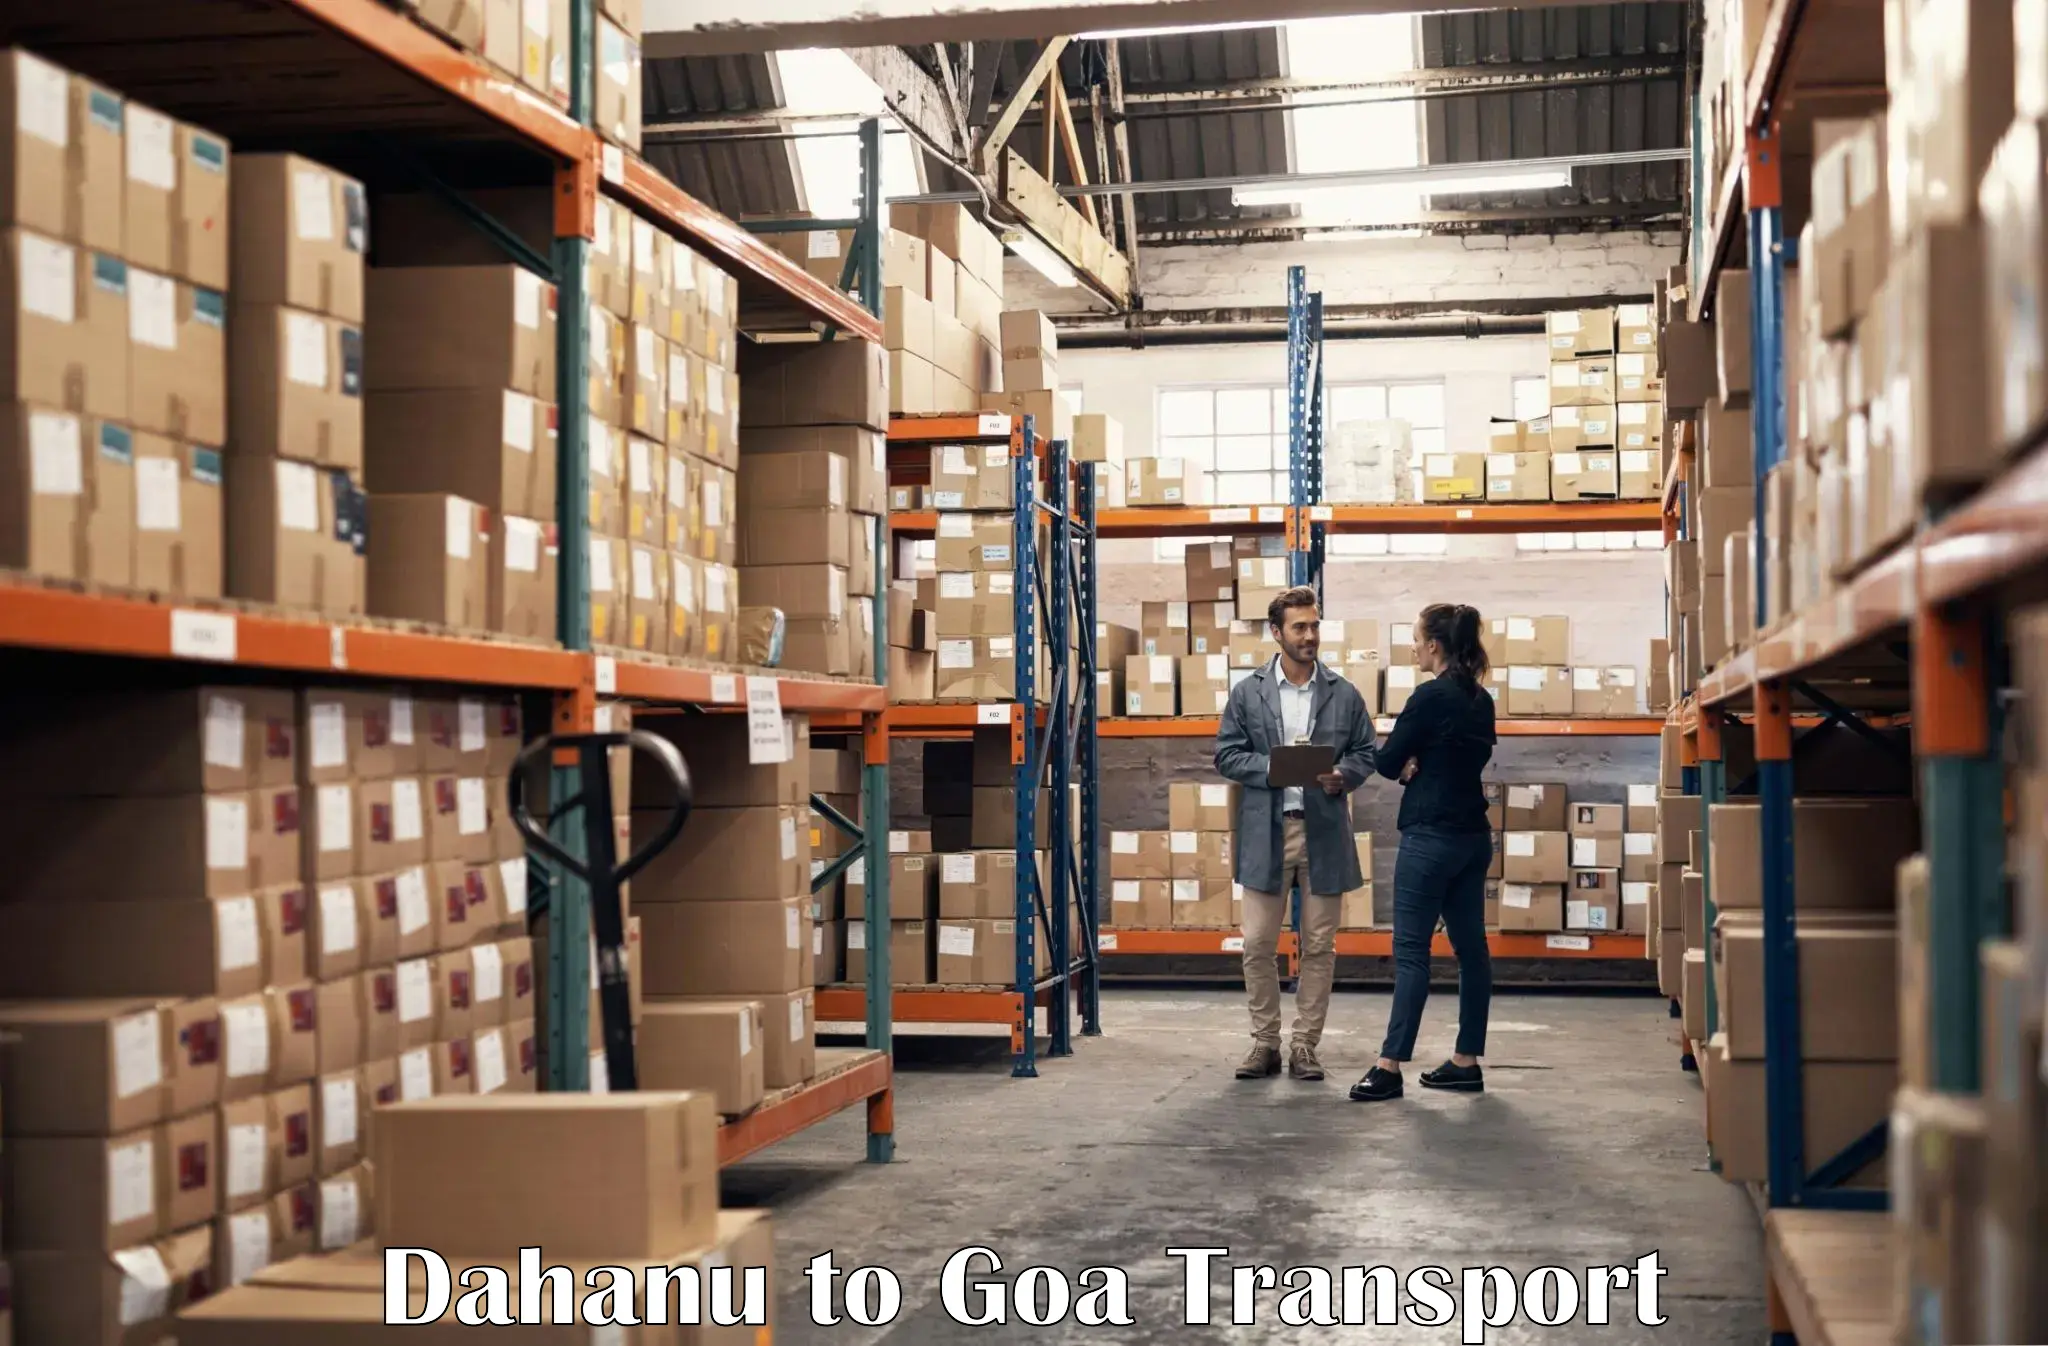 Pick up transport service Dahanu to Goa